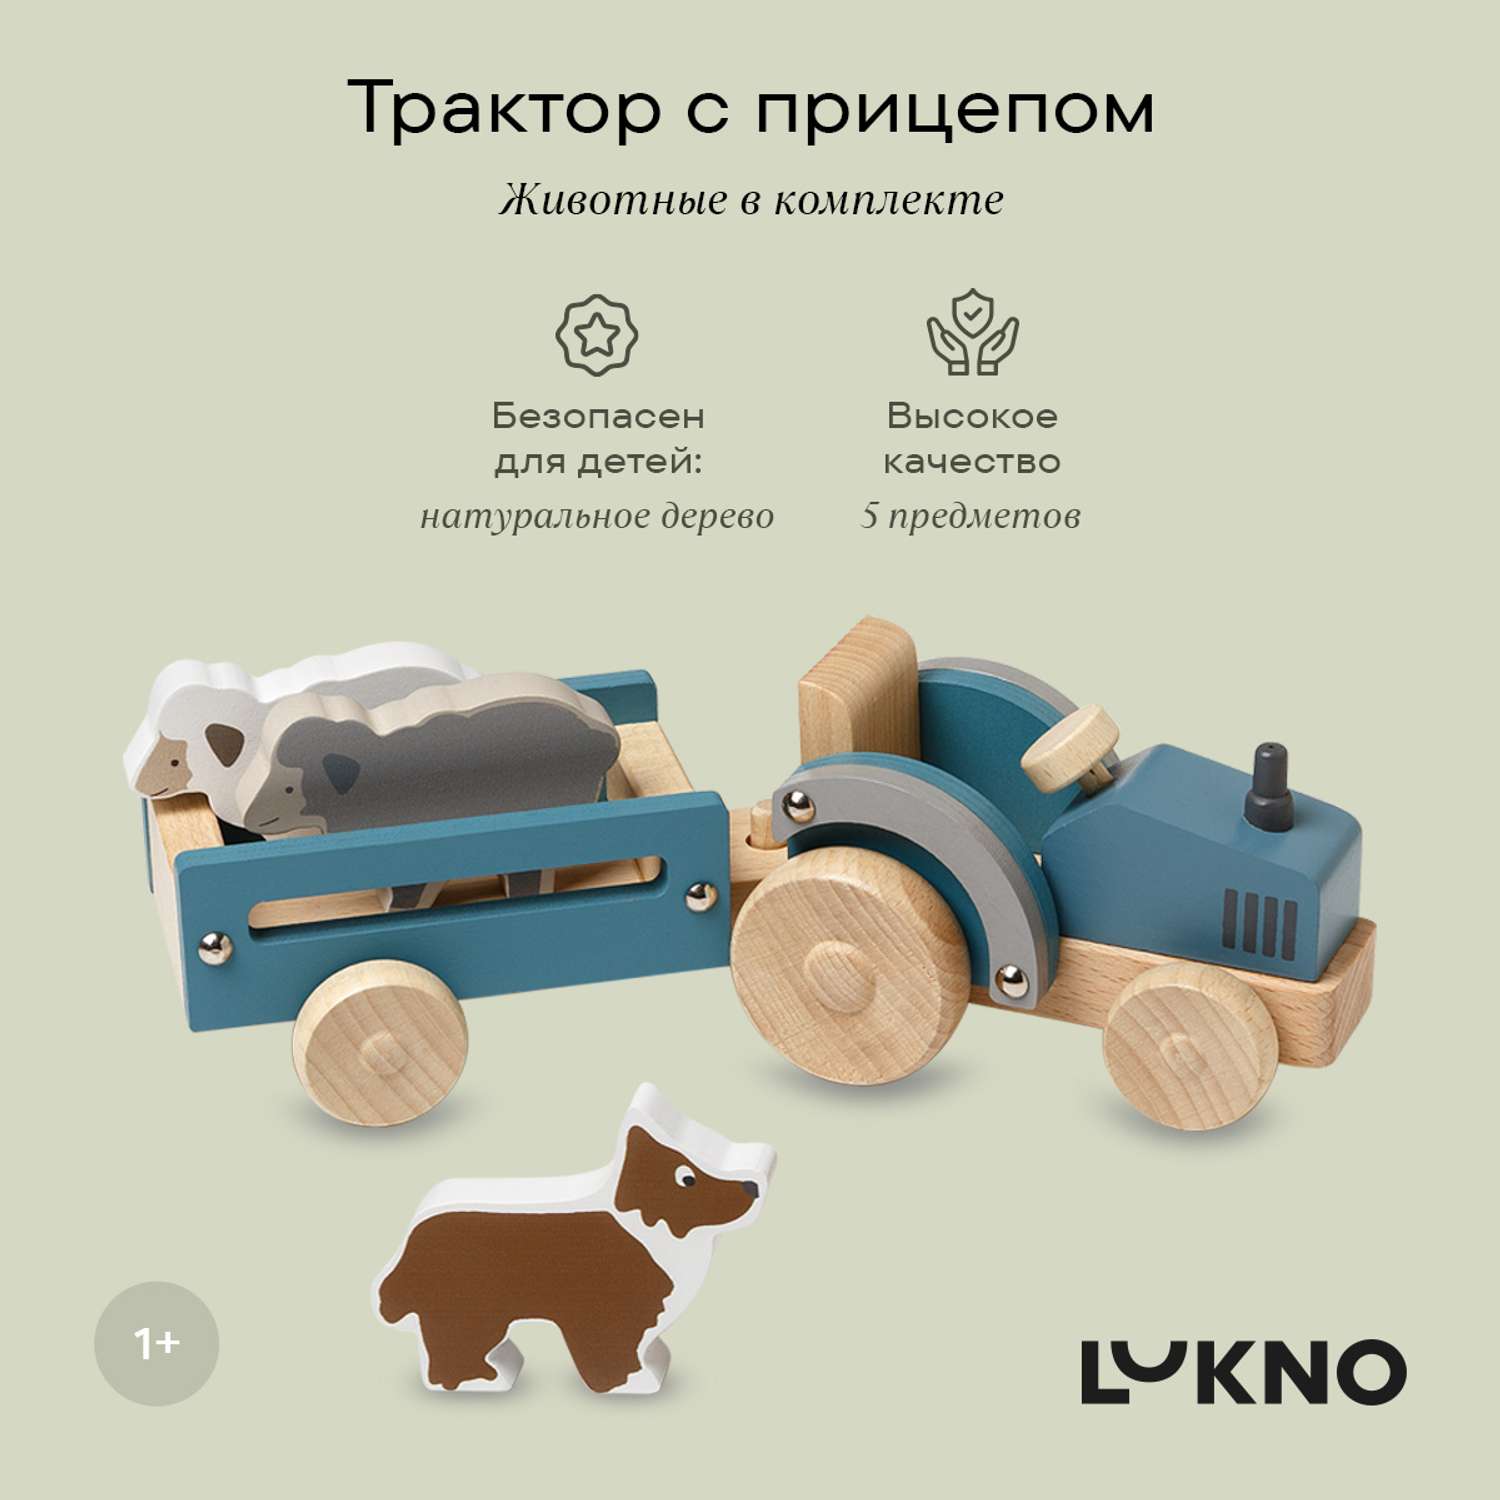 Игровой набор LUKNO Трактор с прицепом и фигурки животных - фото 1